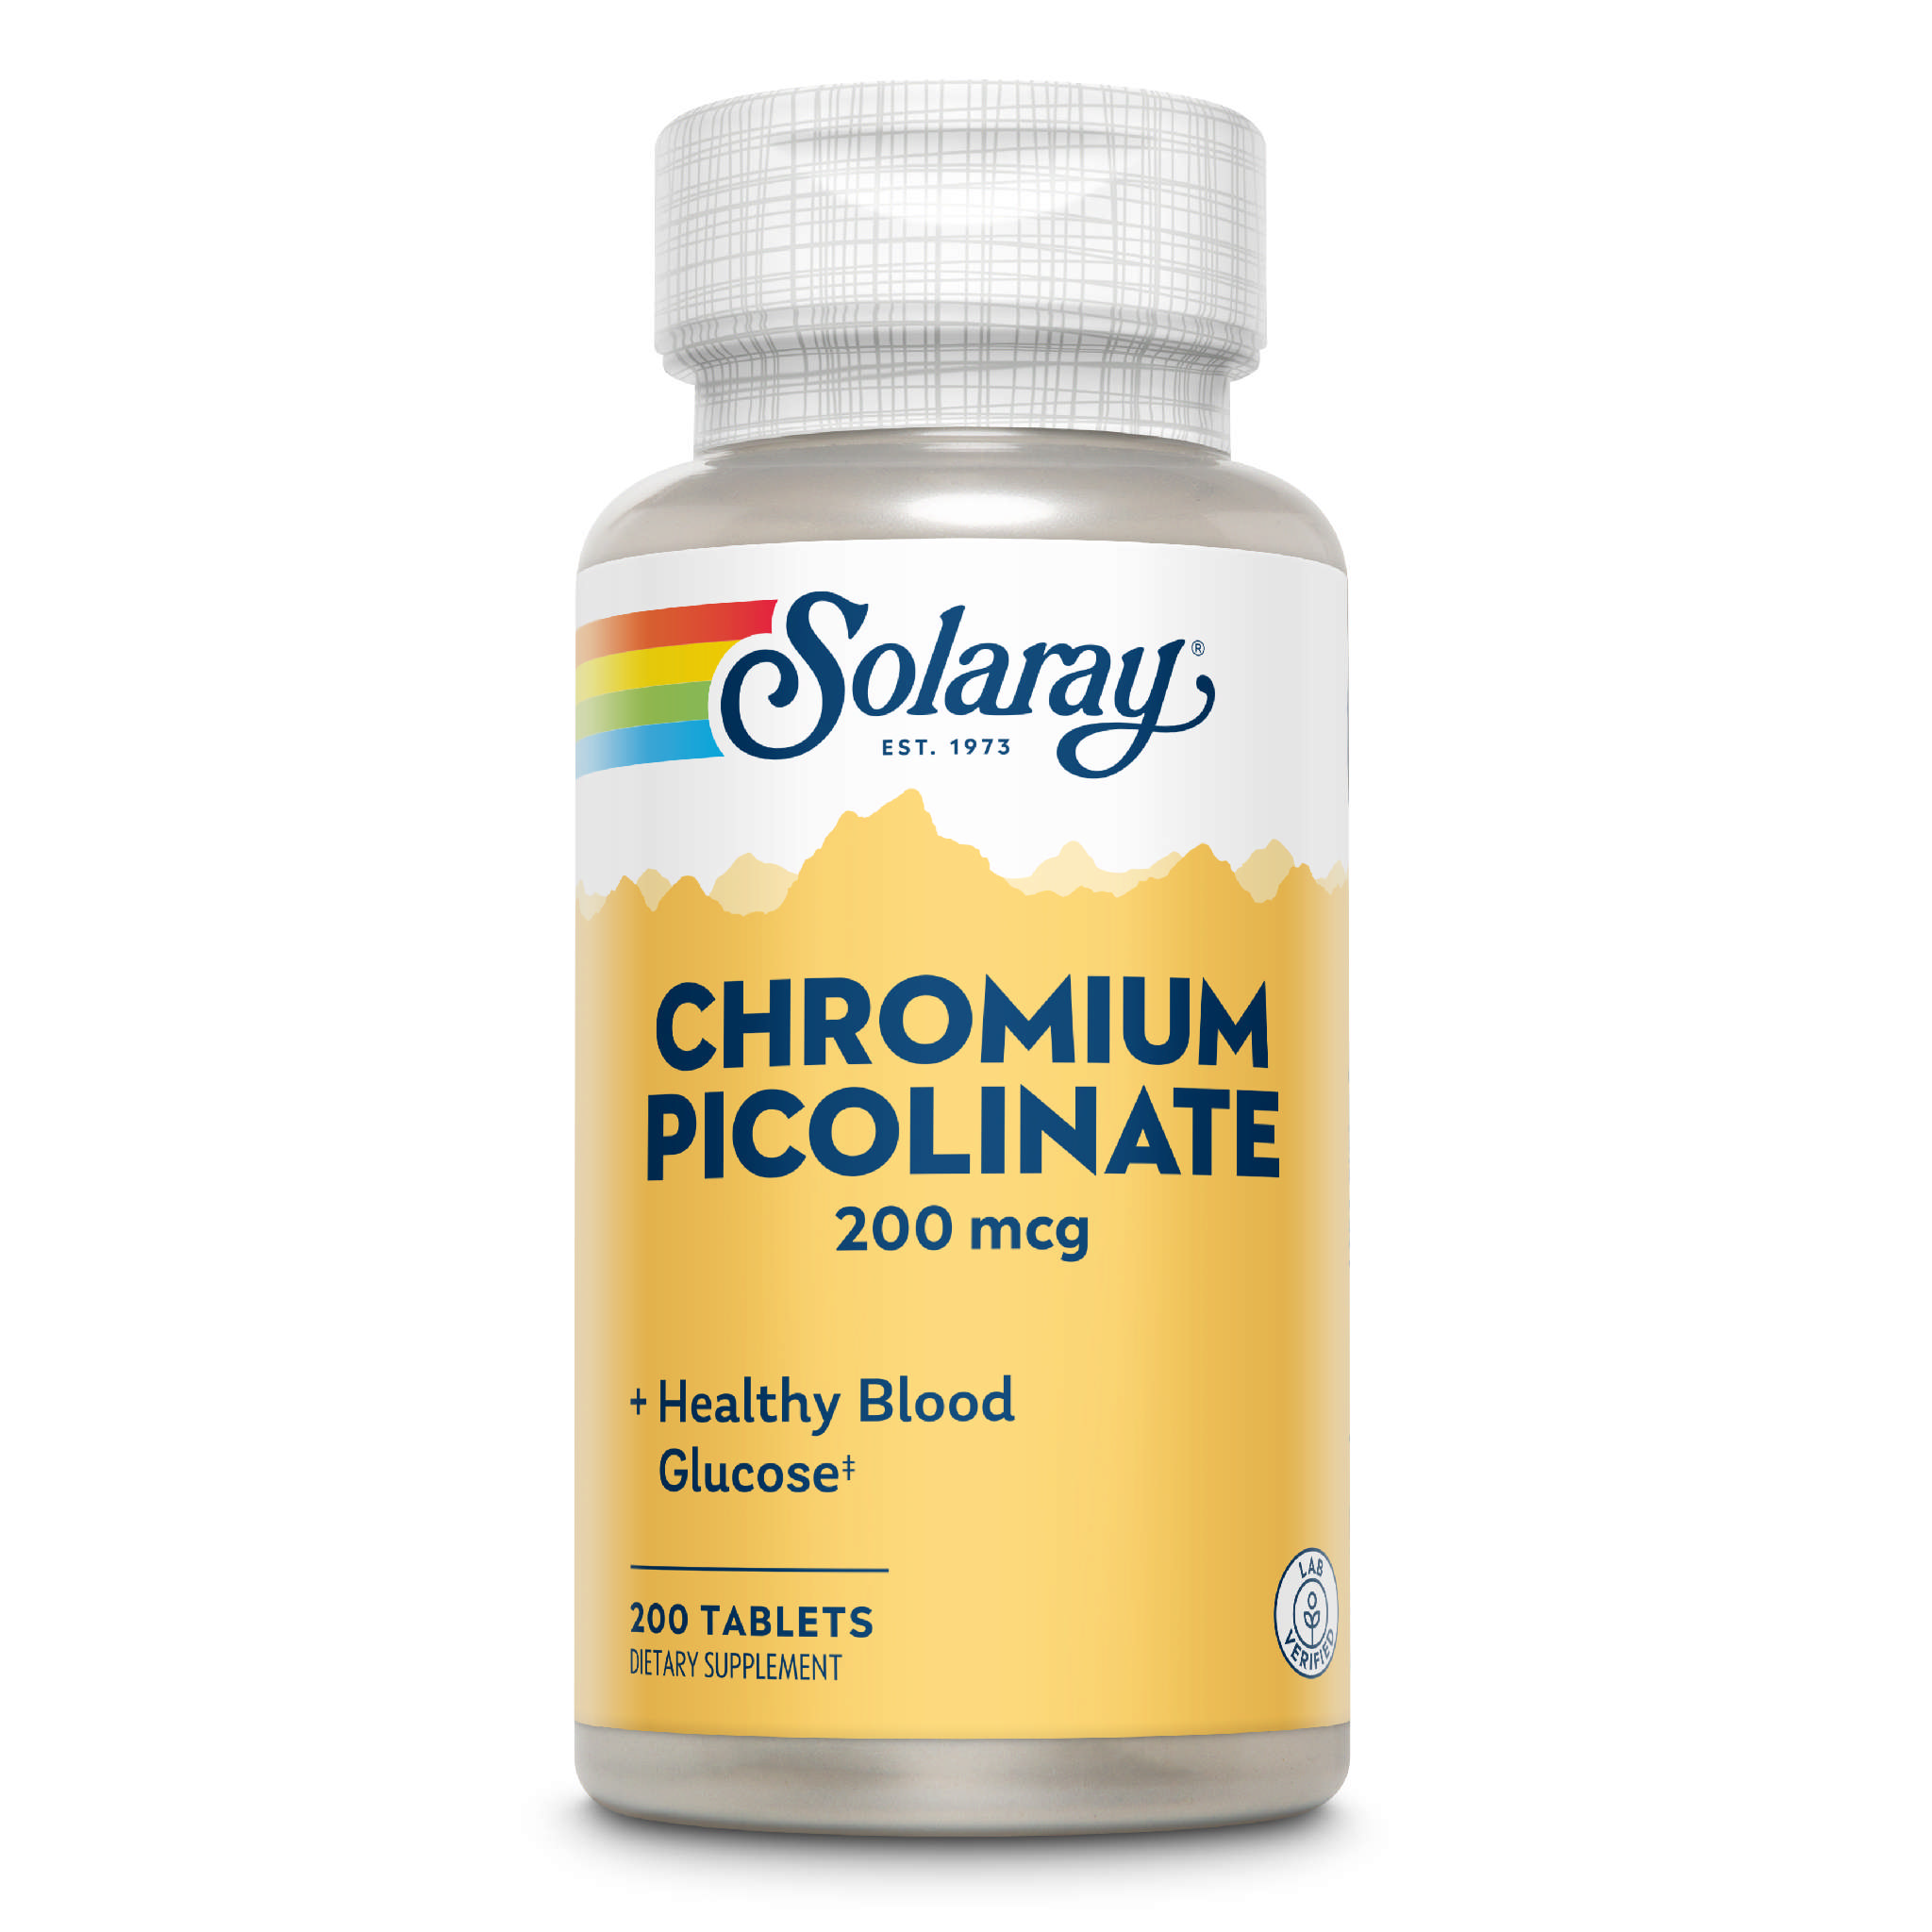 Solaray - Chromium Picolinate 200 mcg